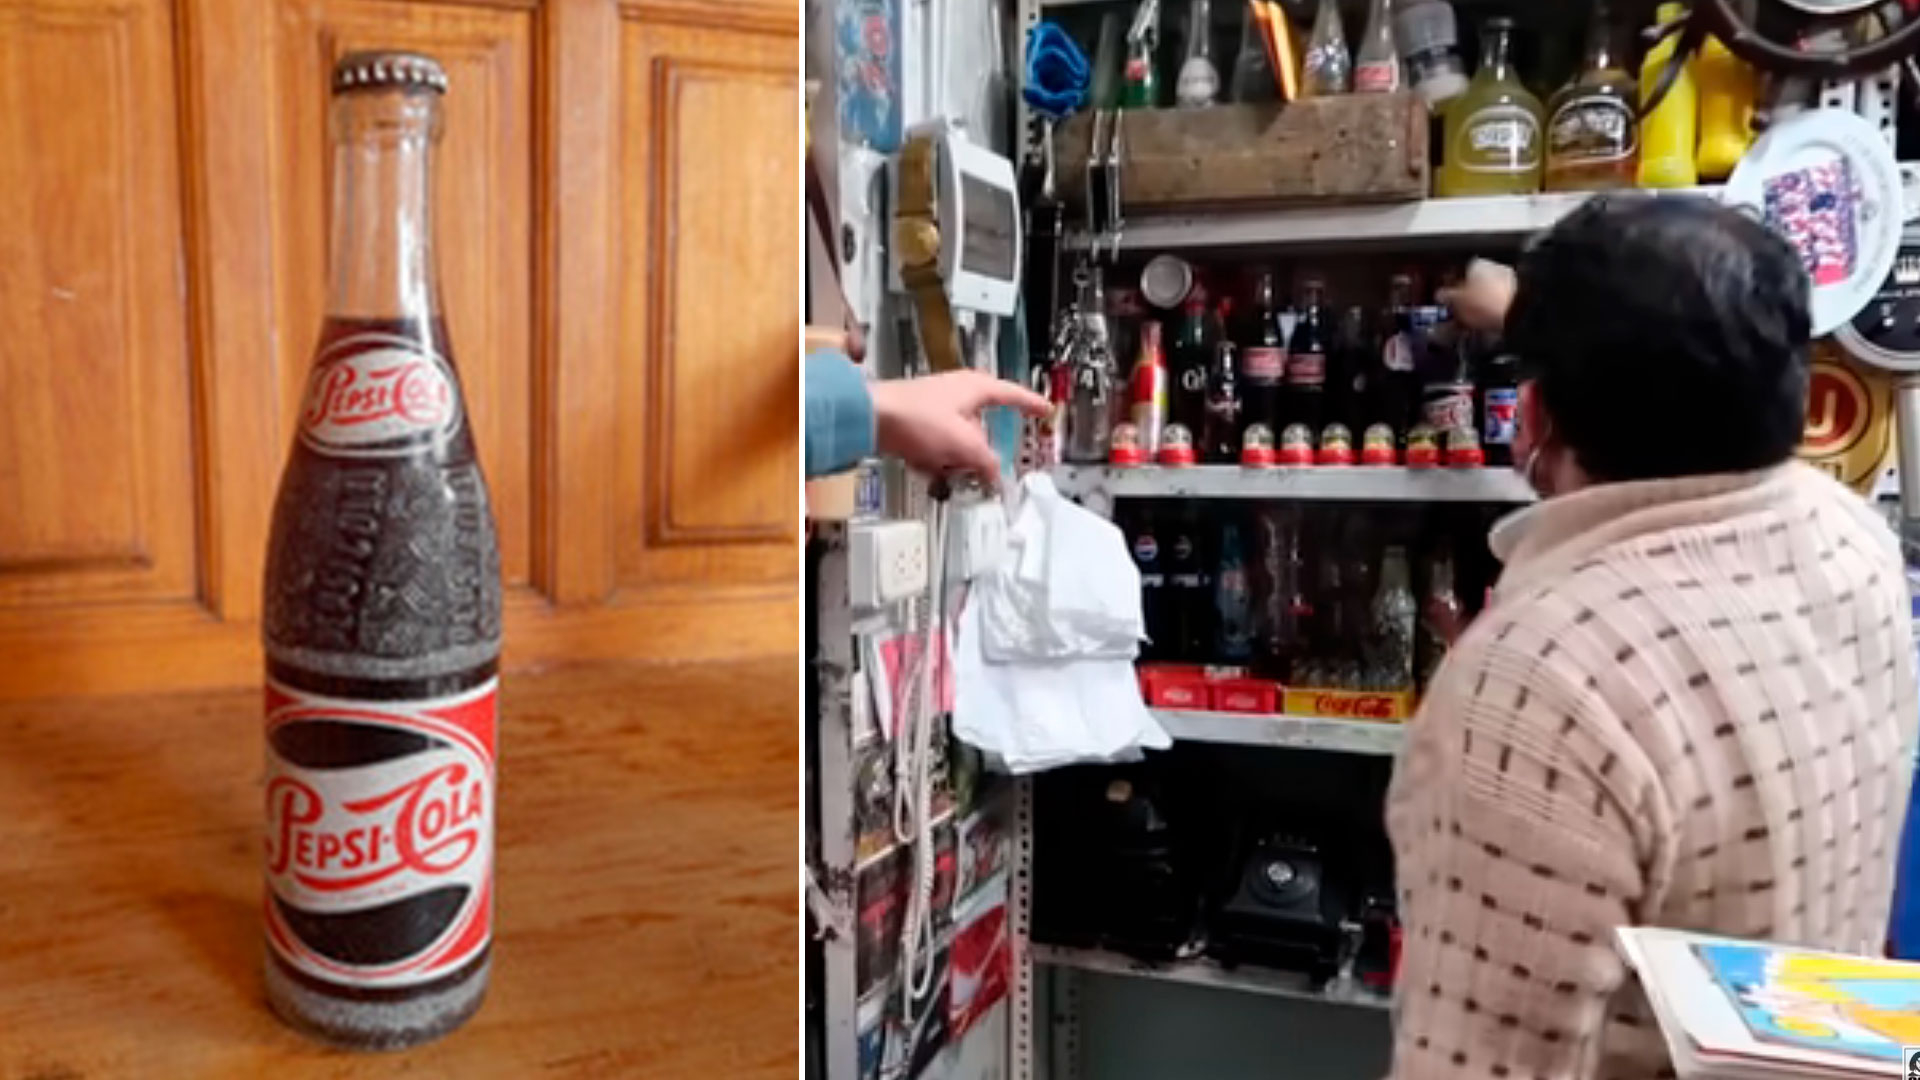 Peruano vende antigua botella de Pepsicola de los años 50 en 120 soles